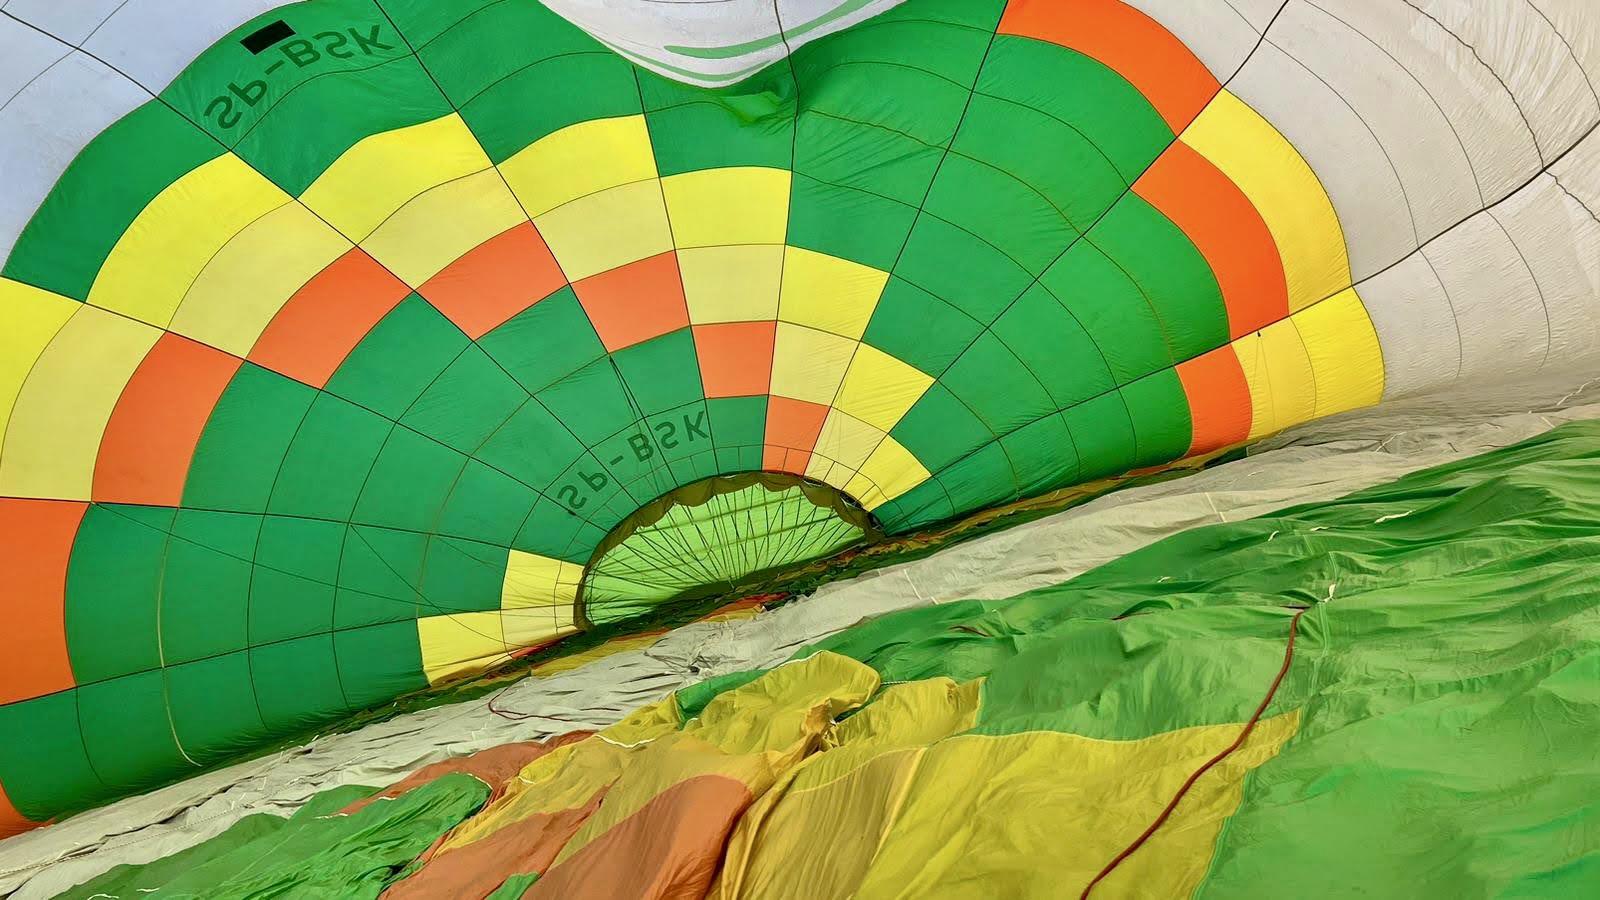 Widok na powłokę balonu SP-BSK od wewnątrz podczas pompowania ogrzanego powietrza